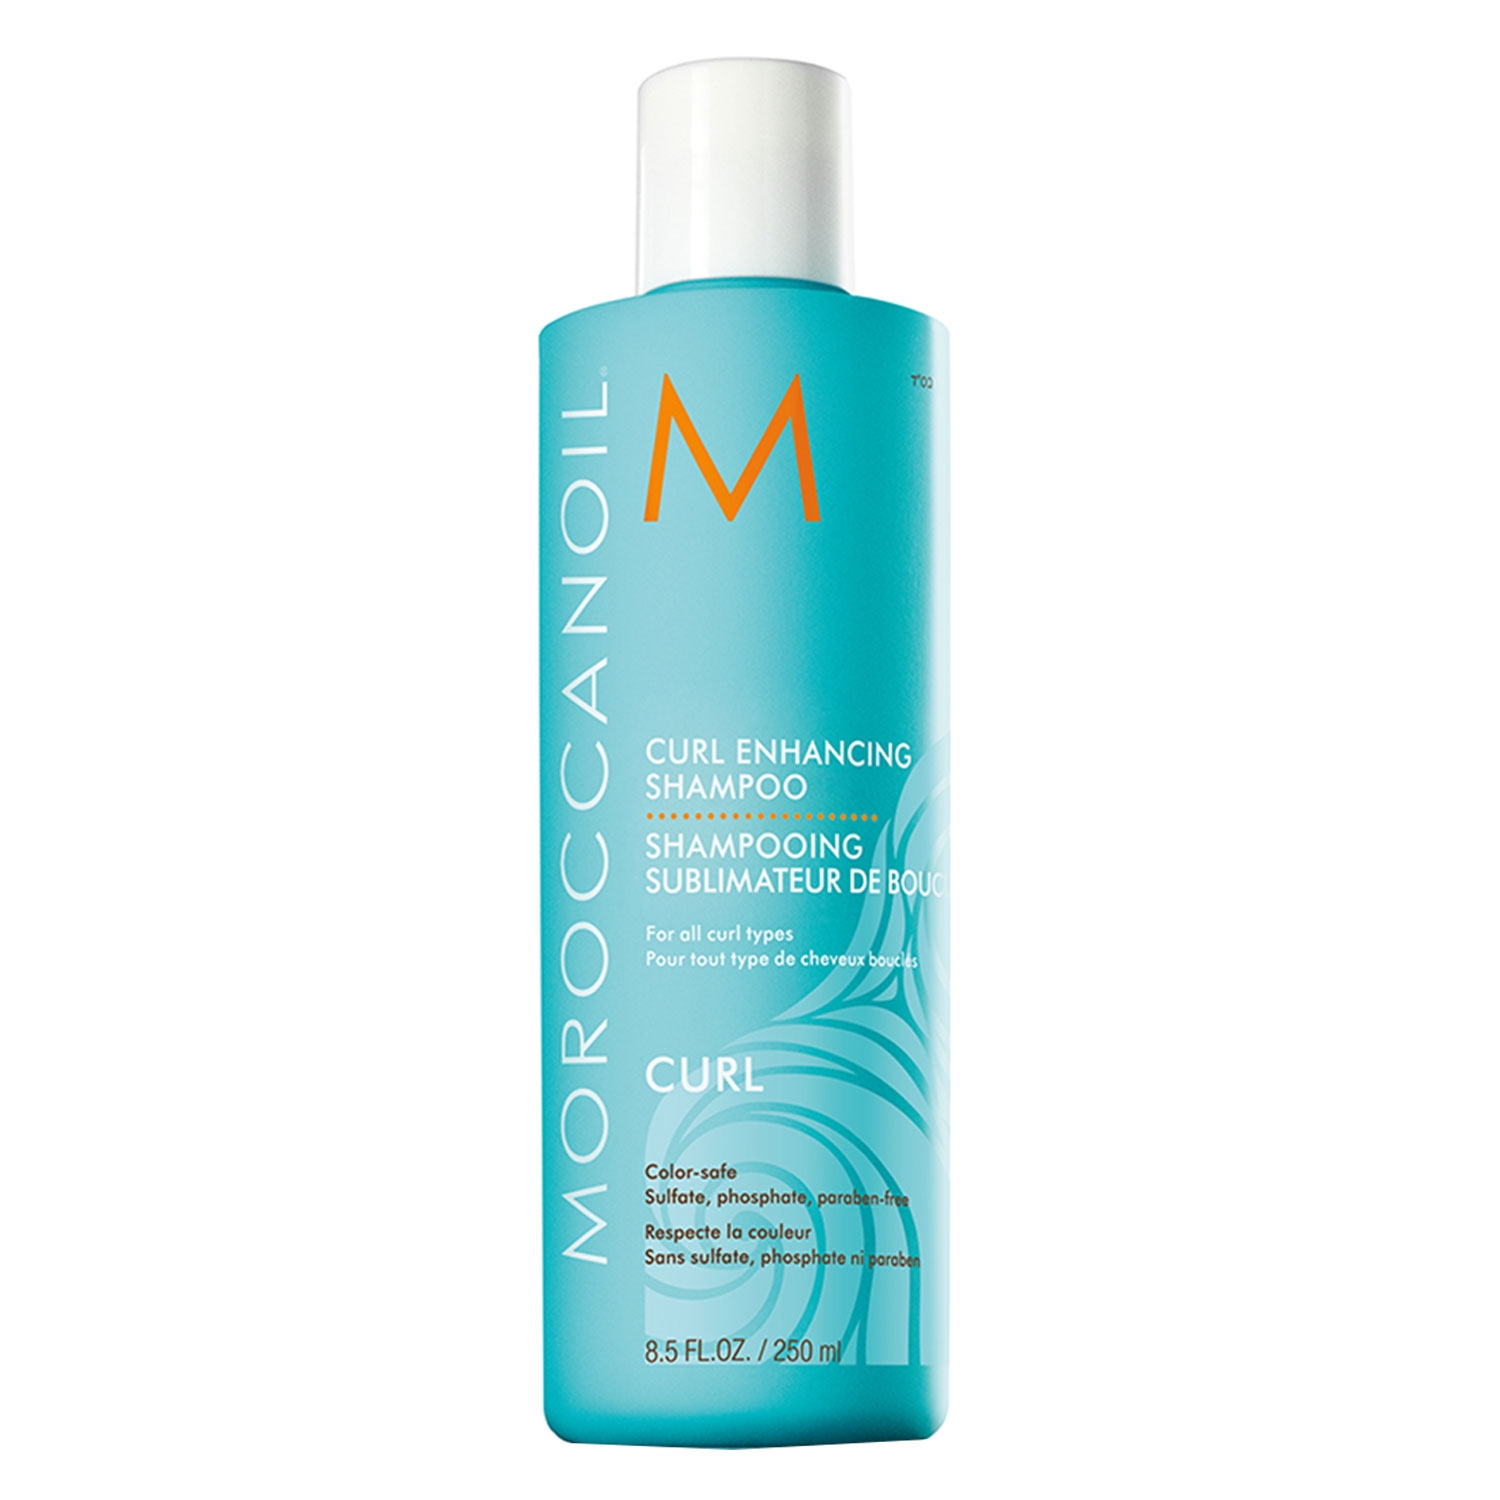 Produktbild von Moroccanoil - Curl Enhancing Shampoo